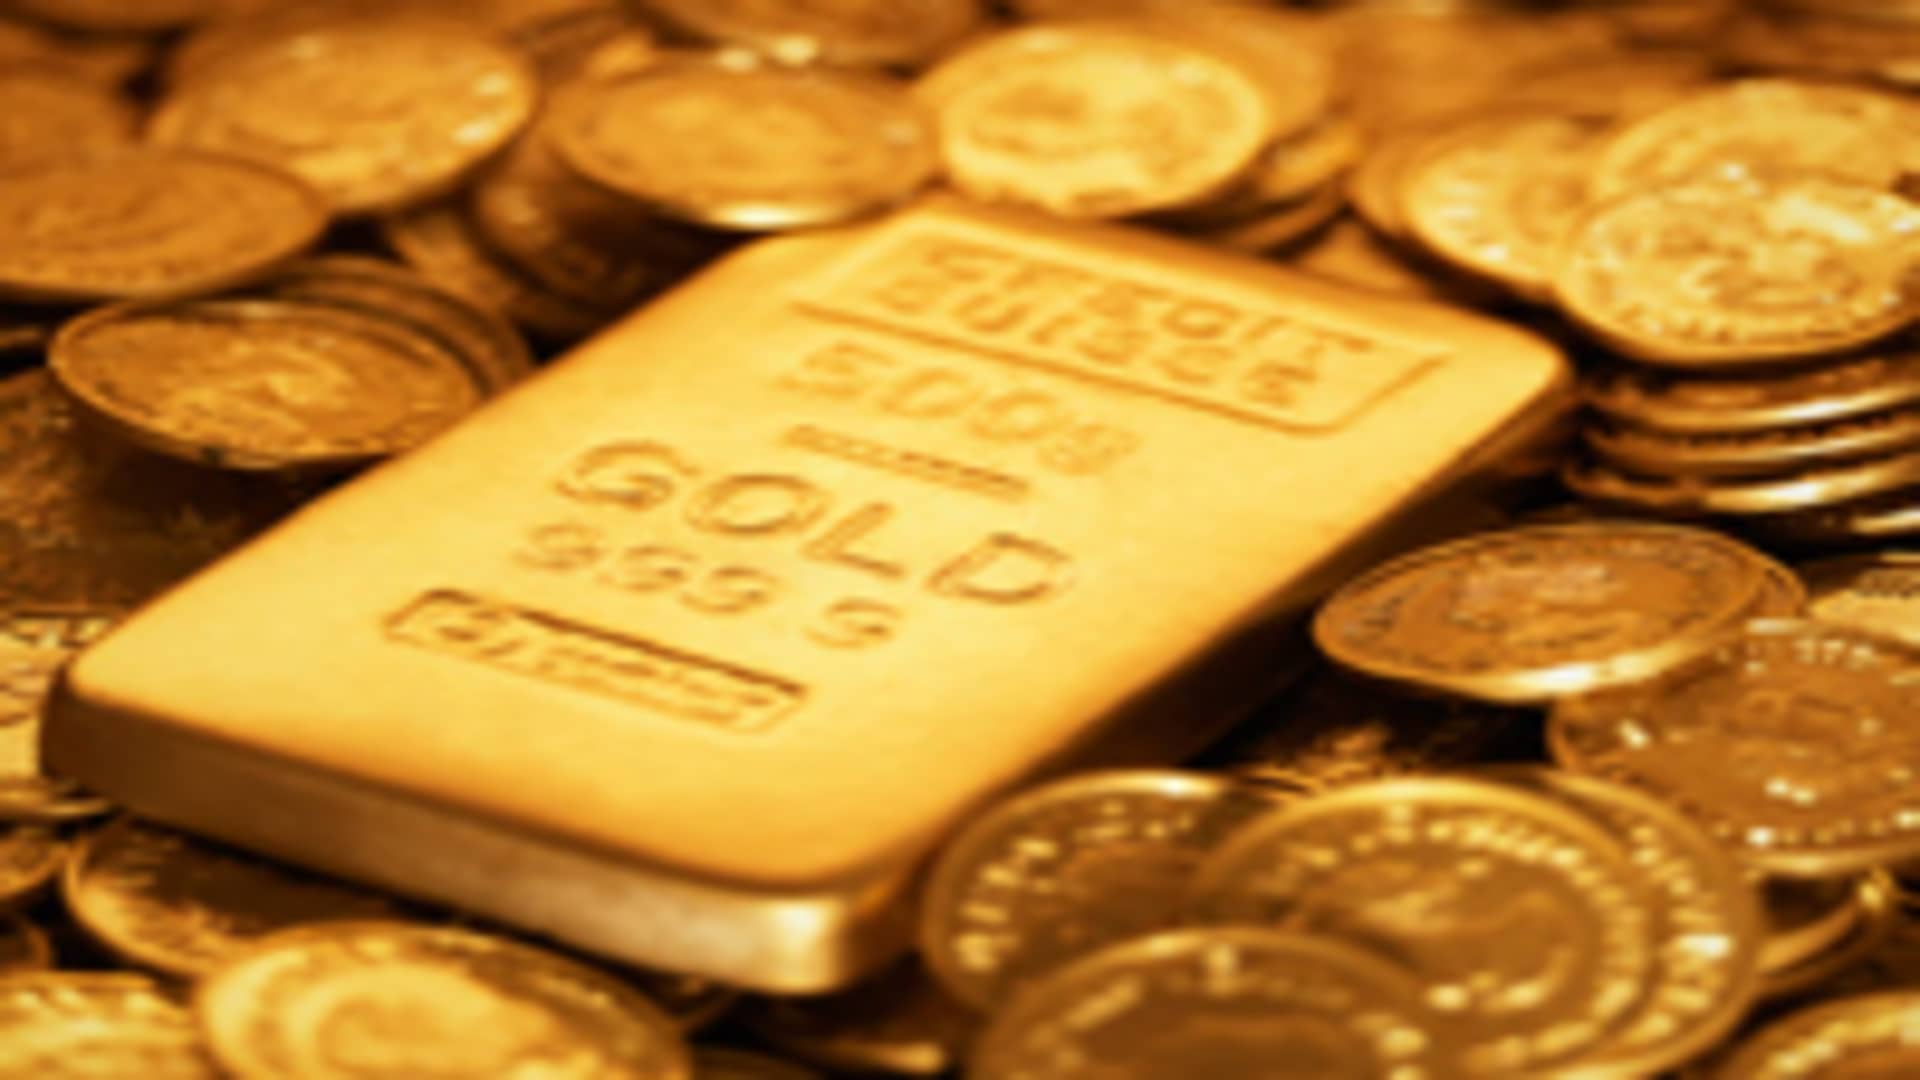 precious metals investing 2013 nba